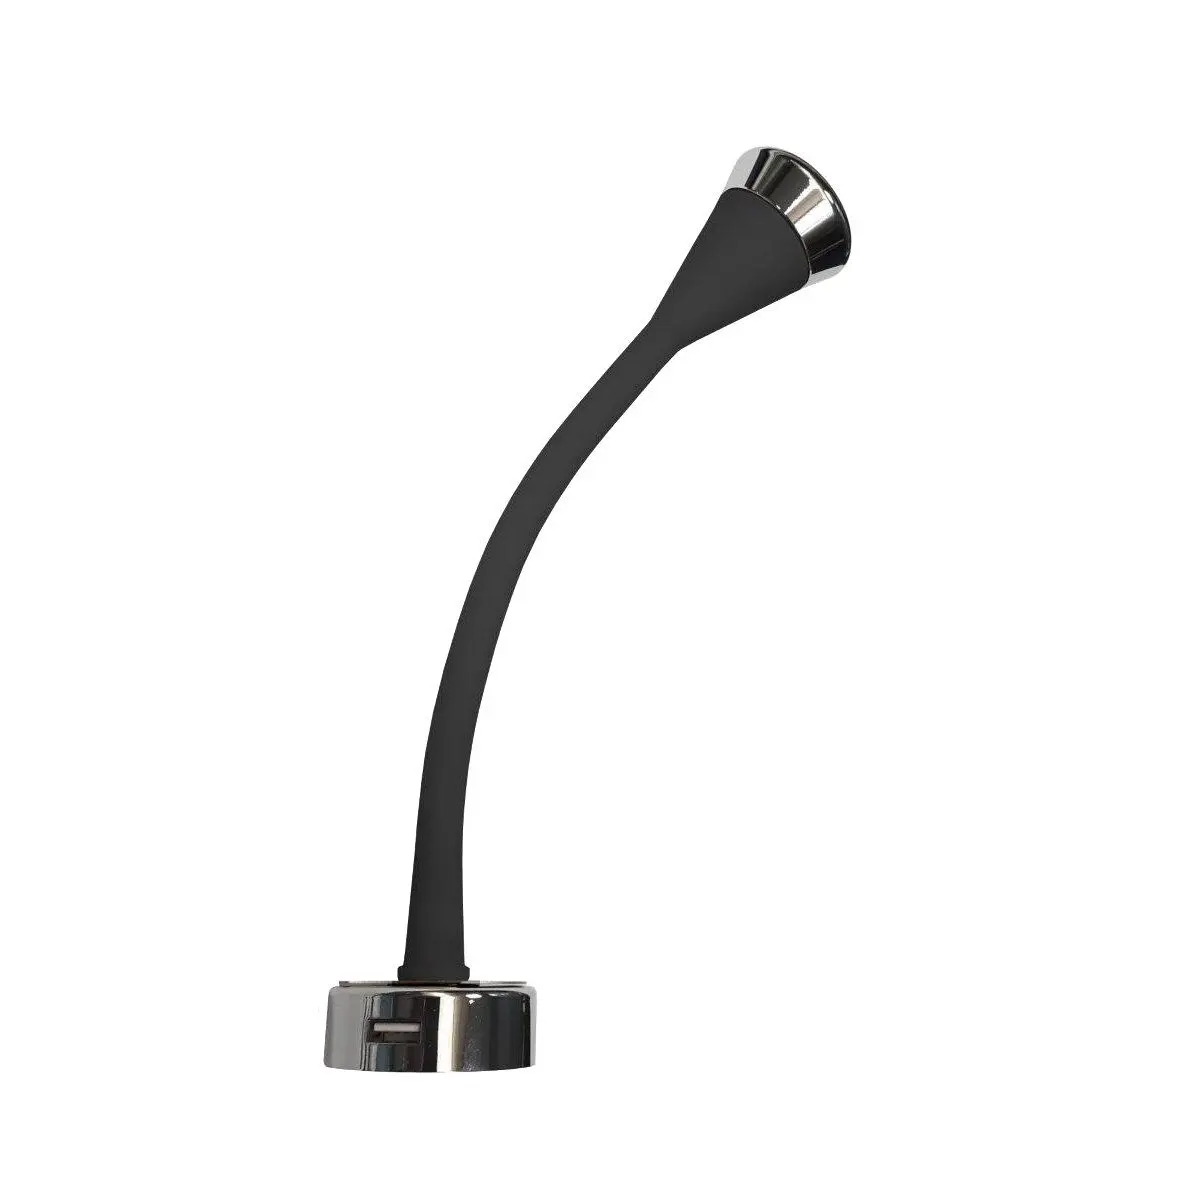 COB LED Flexi olvasólámpa - Soft-Touch, fekete - 2,1A USB-aljzat és kapcsoló - 3200 K - 1,5W